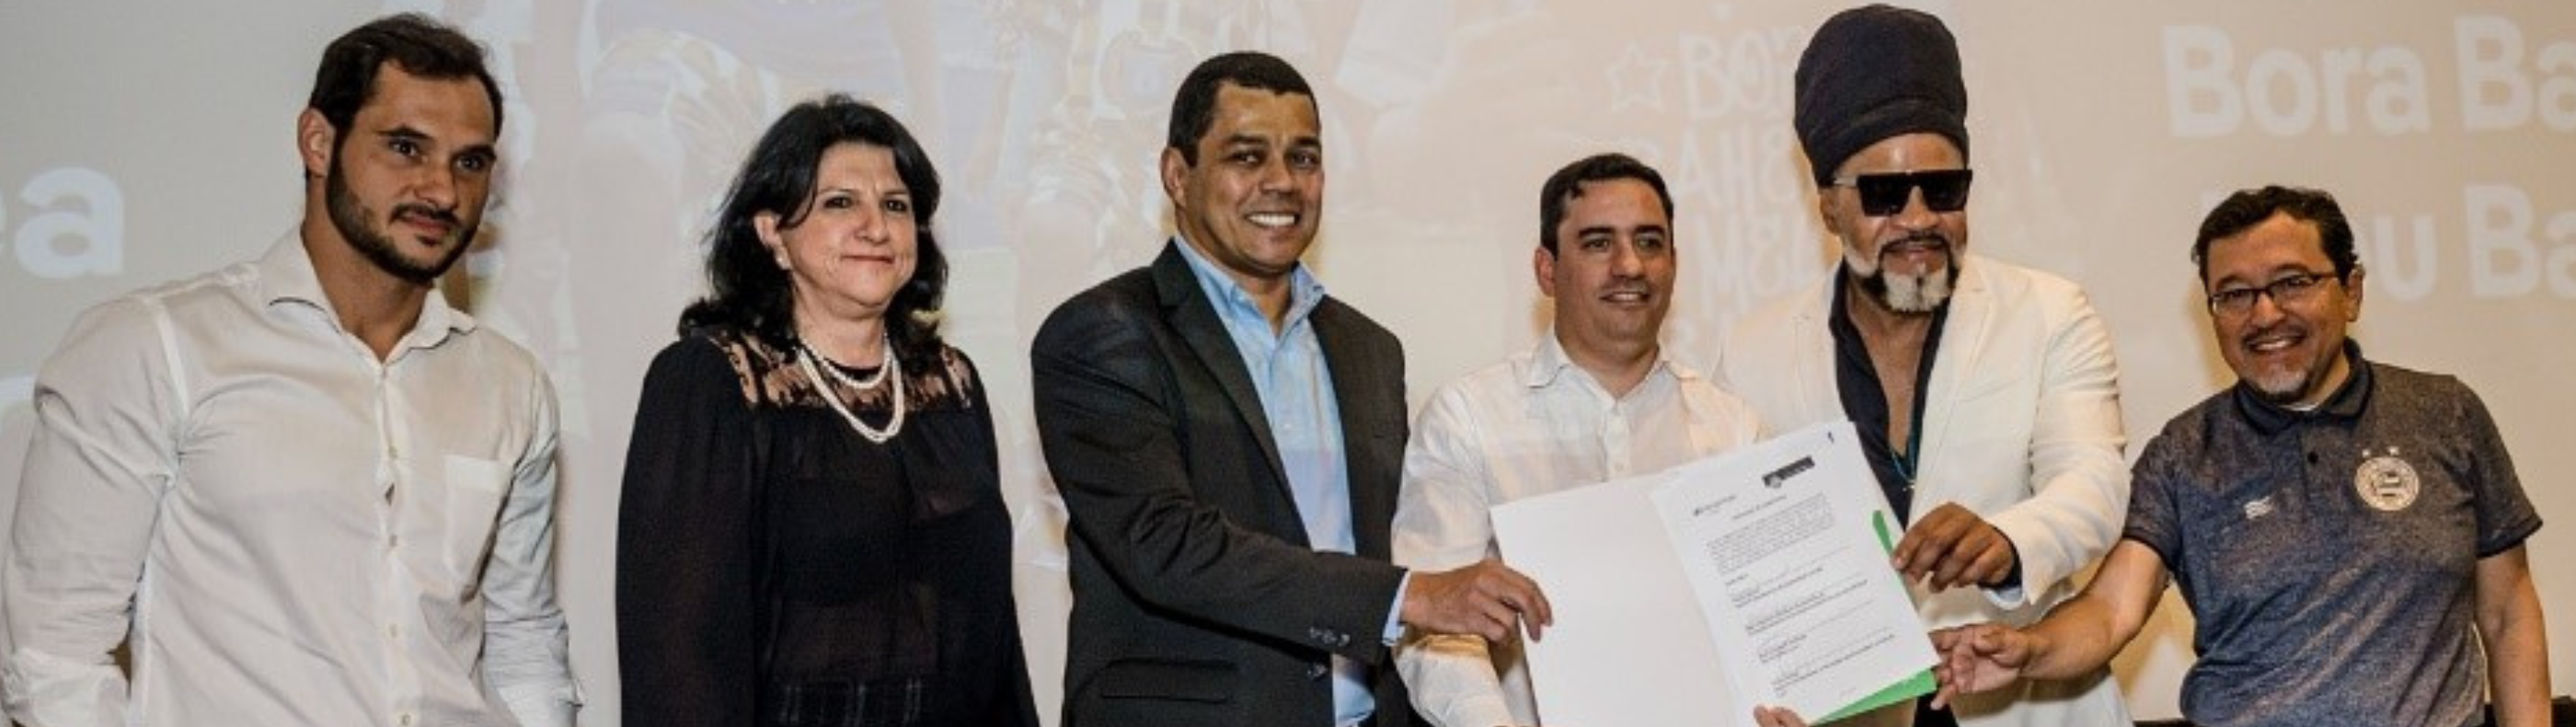 Neoenergia e Esporte Clube Bahia firmam parceria para a promoção de práticas eficientes de energia em comunidades de Salvador